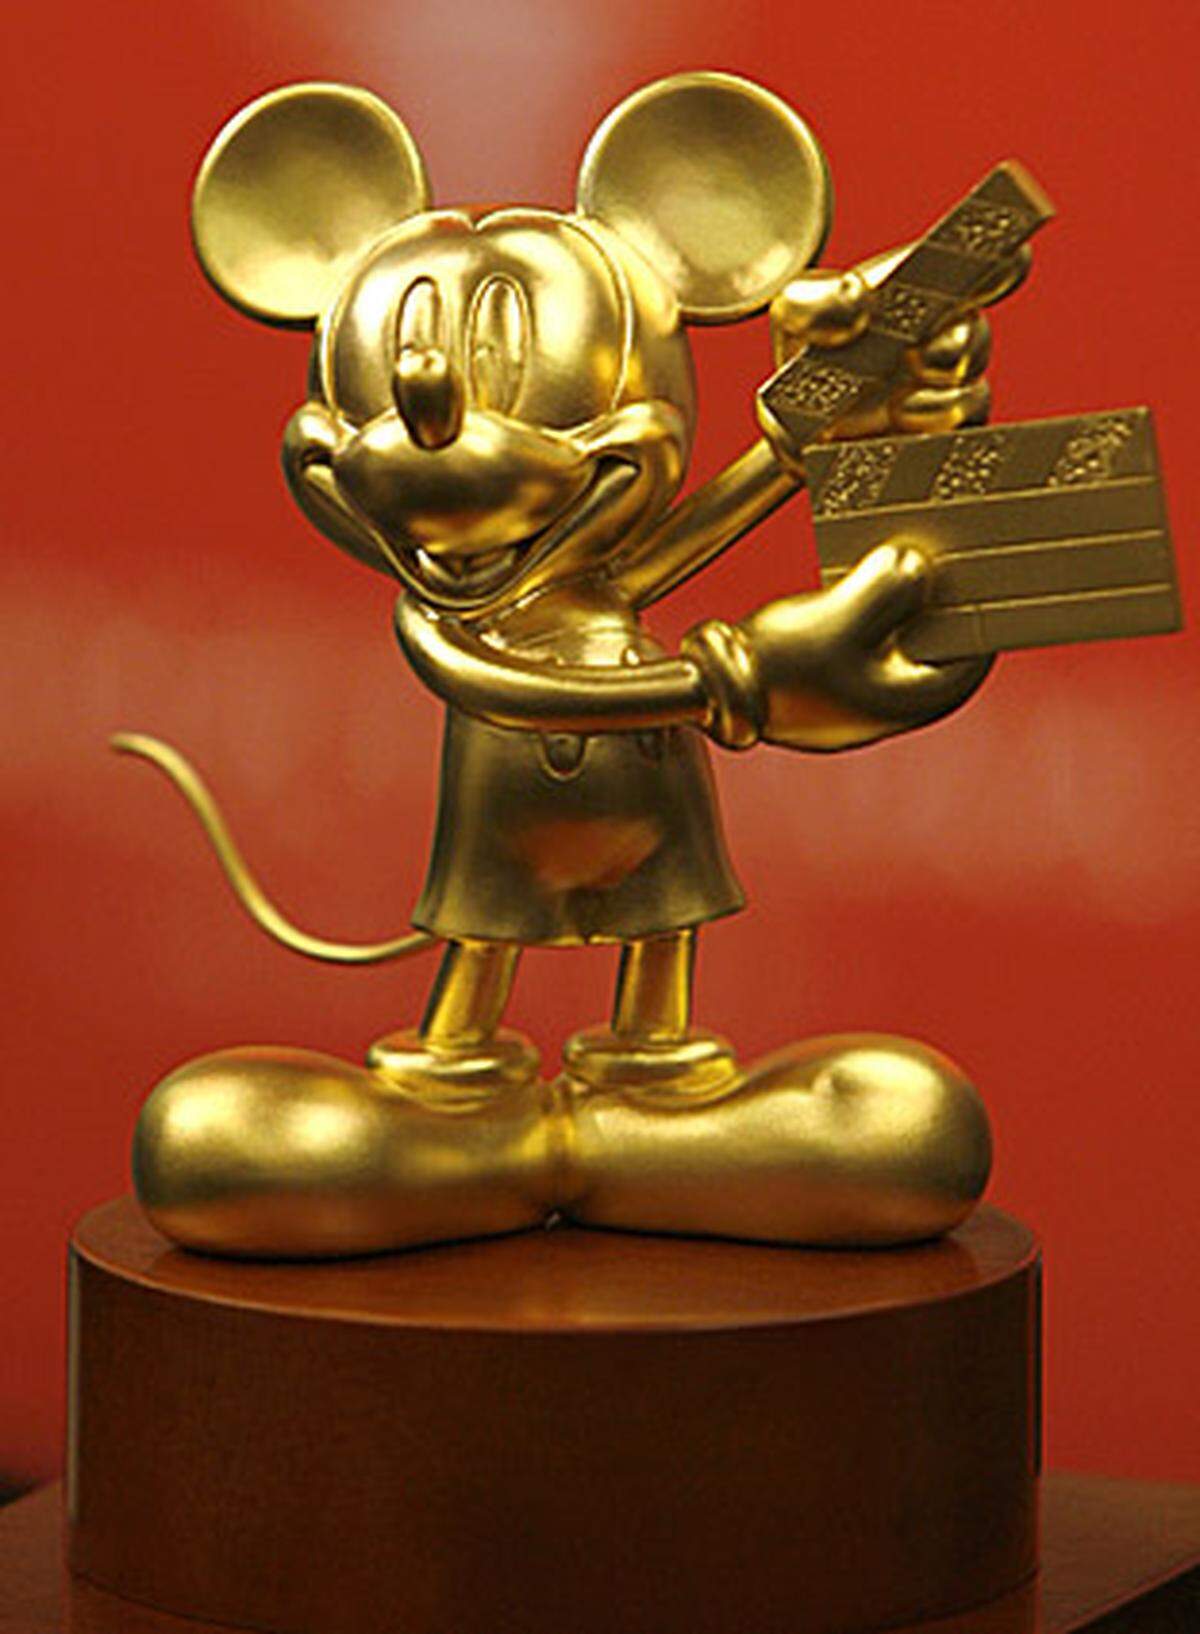 Dem Disney-Konzern hat Micky Maus einen Reichtum beschert, von dem selbst Dagobert Duck nur träumen kann. 1930 durfte gegen eine Gebühr von 300 Dollar erstmals ein Unternehmen eine Schulmappe mit der Maus bedrucken. Seither gibt es von der Unterhose bis zur Kaffeetasse kaum einen Gebrauchsgegenstand, der nicht mit dem Nagerdesign zu haben ist.